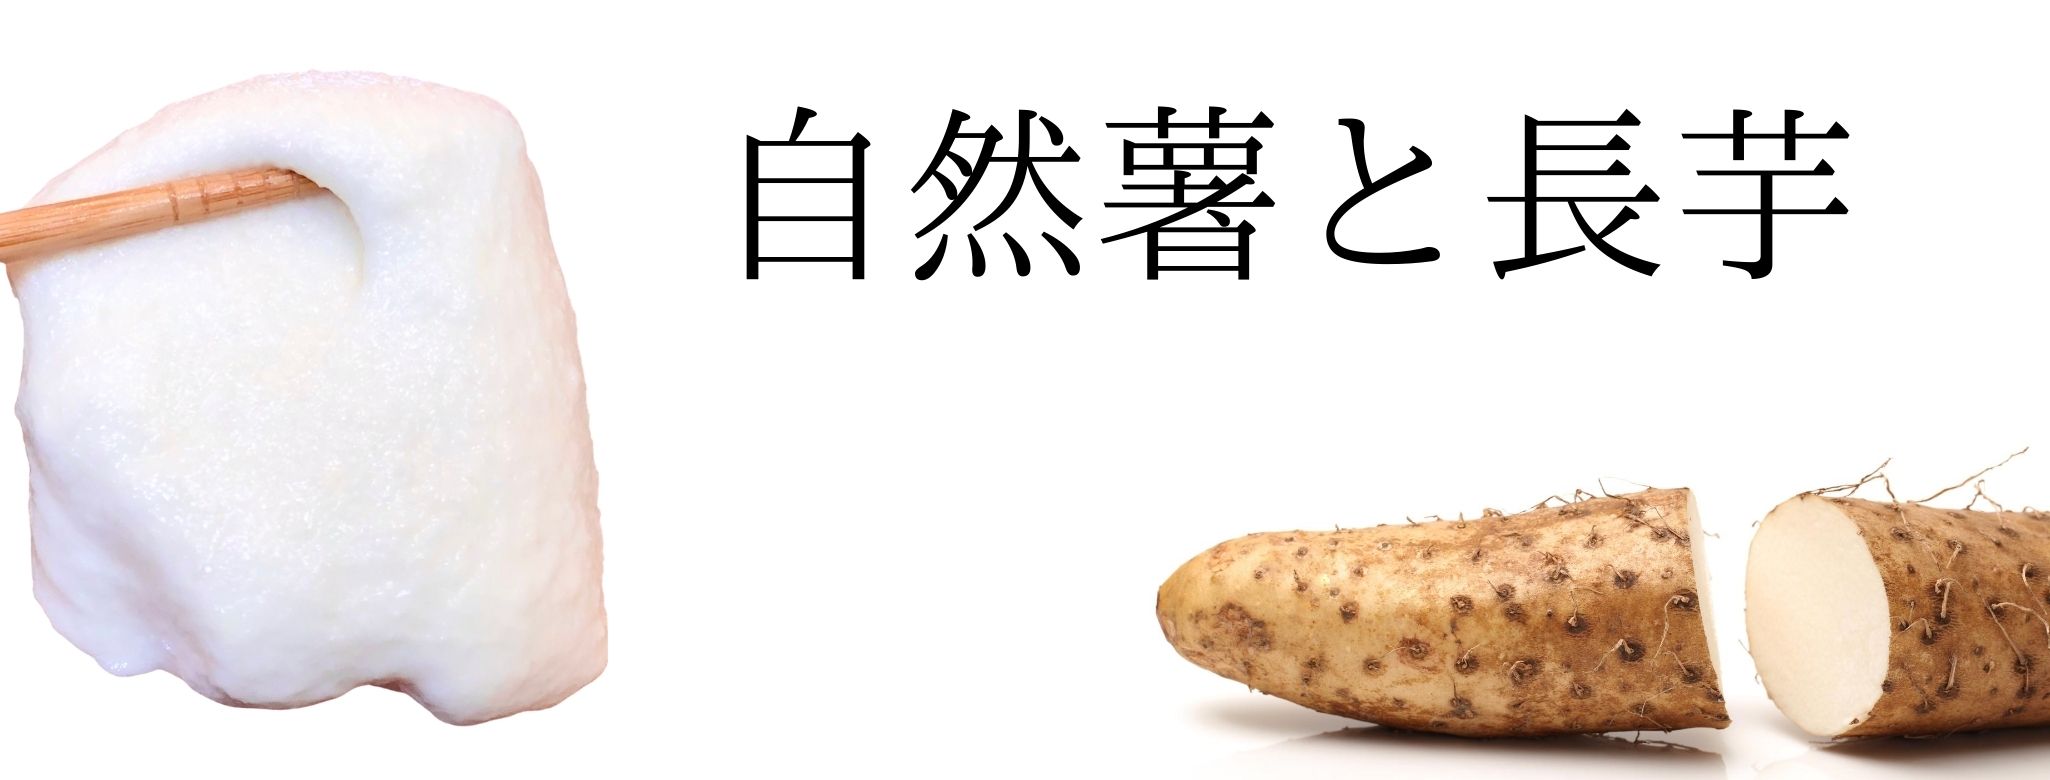 自然薯と長芋の違い 天然自然薯マイスターが解説 自然薯マイスターの深掘りblog